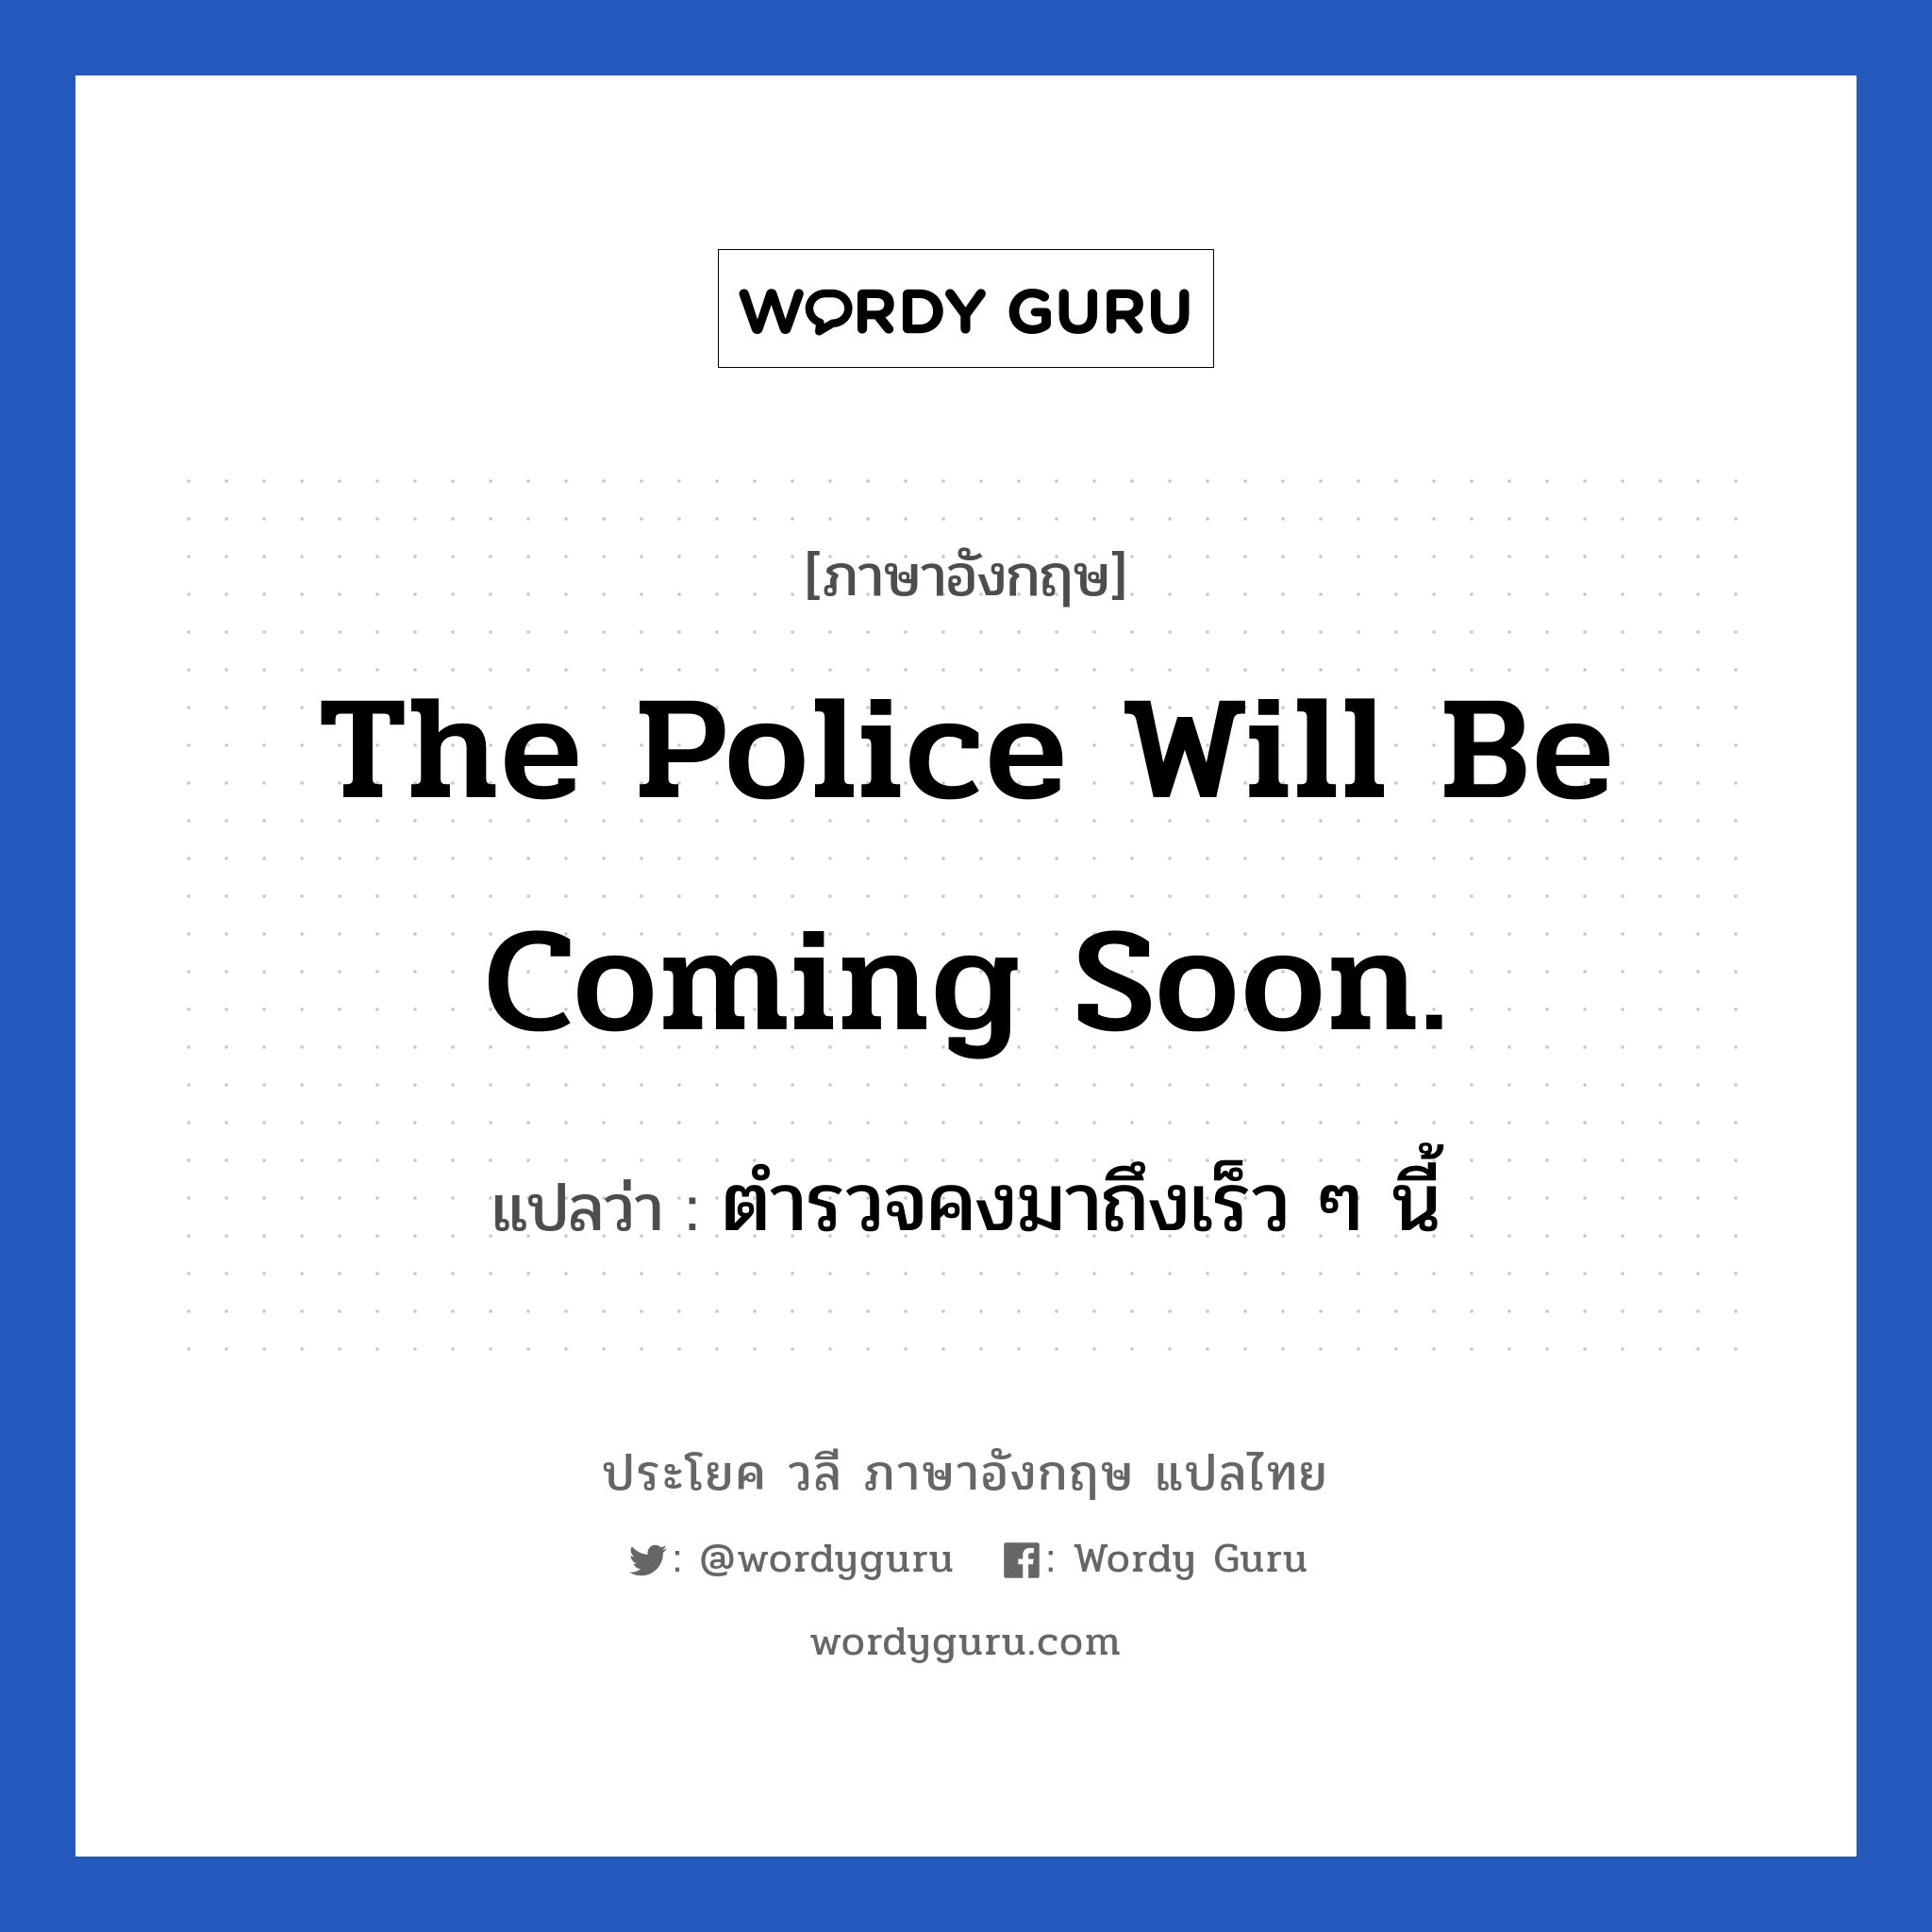 ตำรวจคงมาถึงเร็ว ๆ นี้ ภาษาอังกฤษ?, วลีภาษาอังกฤษ ตำรวจคงมาถึงเร็ว ๆ นี้ แปลว่า The police will be coming soon.